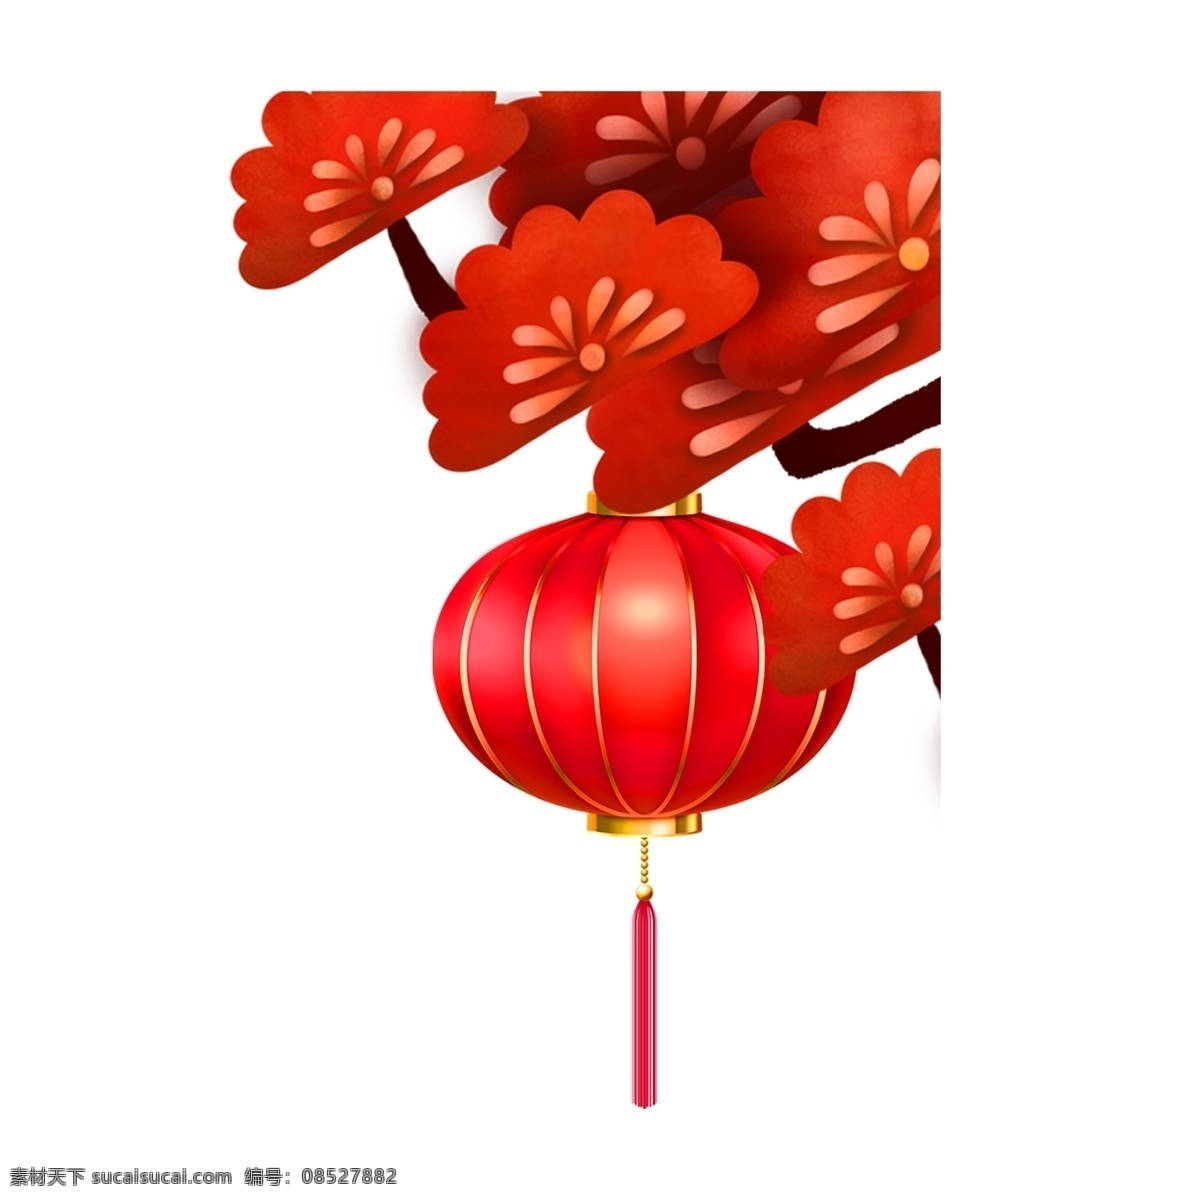 春节 庆祝 红色 灯笼 节日 元素 喜庆节日元素 大红色灯笼 装饰 png免抠图 花枝